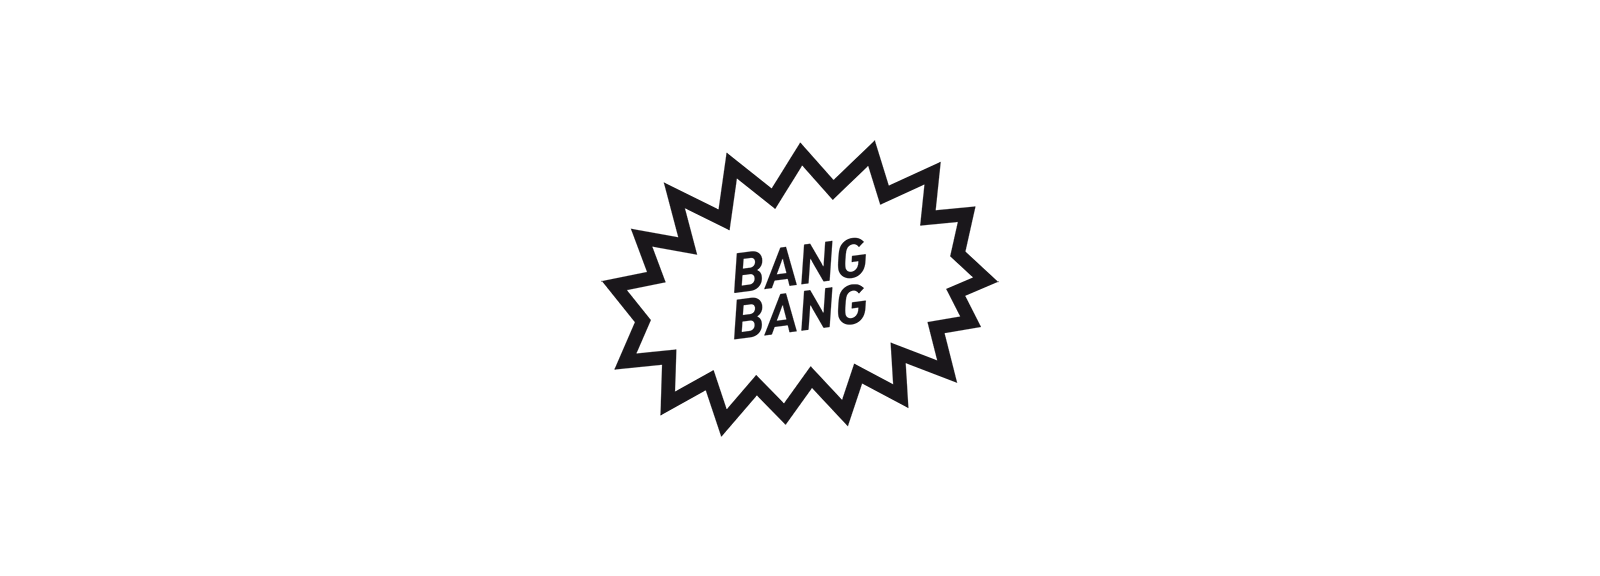 Bang a1. Bang гиф. Надпись бэнг. Гиф Bang Bang. Бэнг логотип.